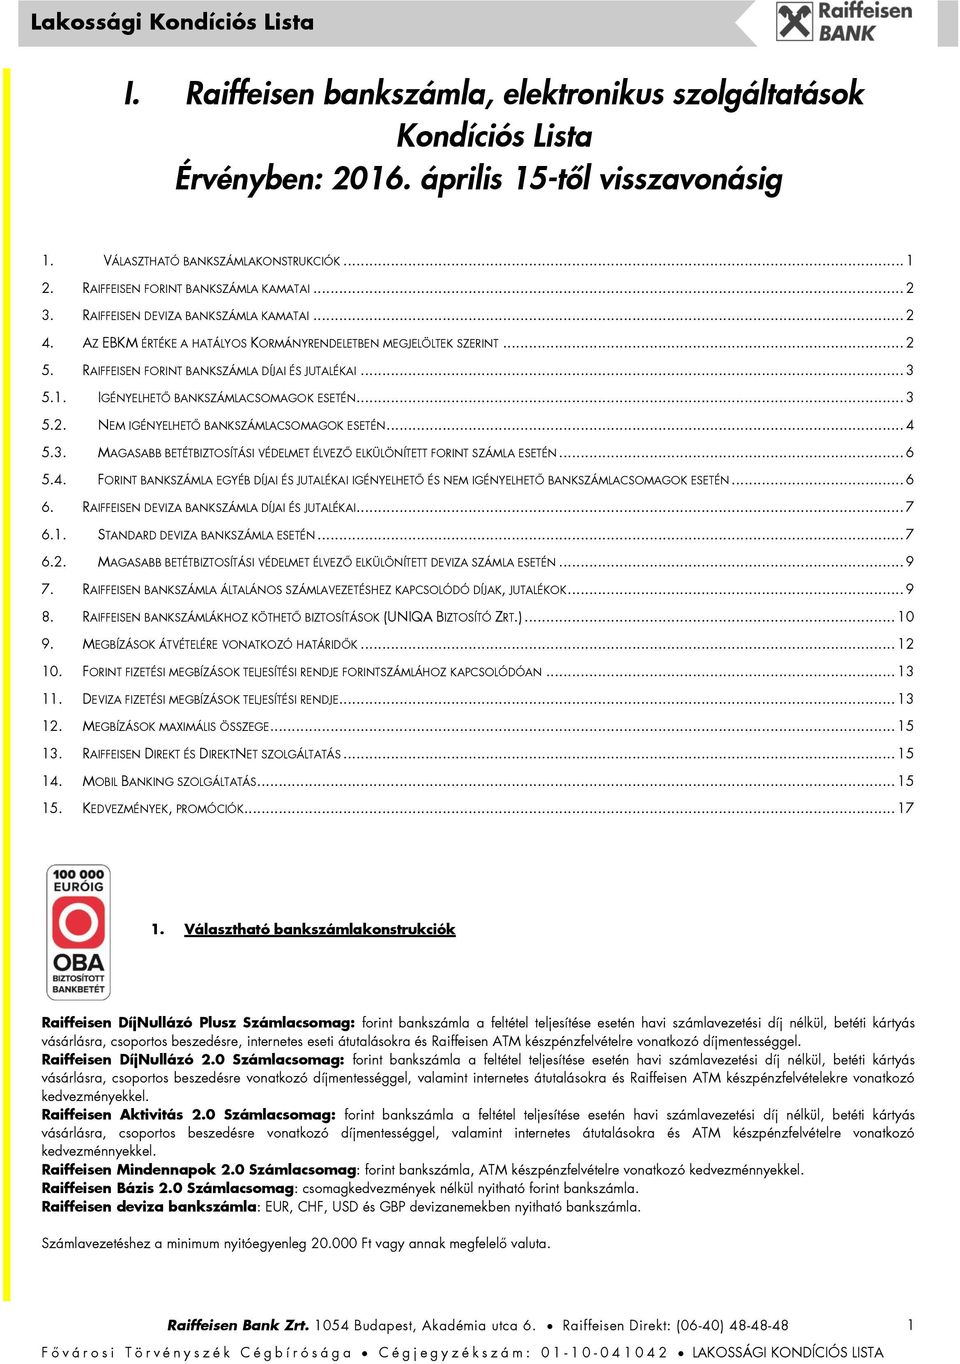 I. Raiffeisen bankszámla, elektronikus szolgáltatások Kondíciós Lista  Érvényben: április 15-től visszavonásig - PDF Ingyenes letöltés